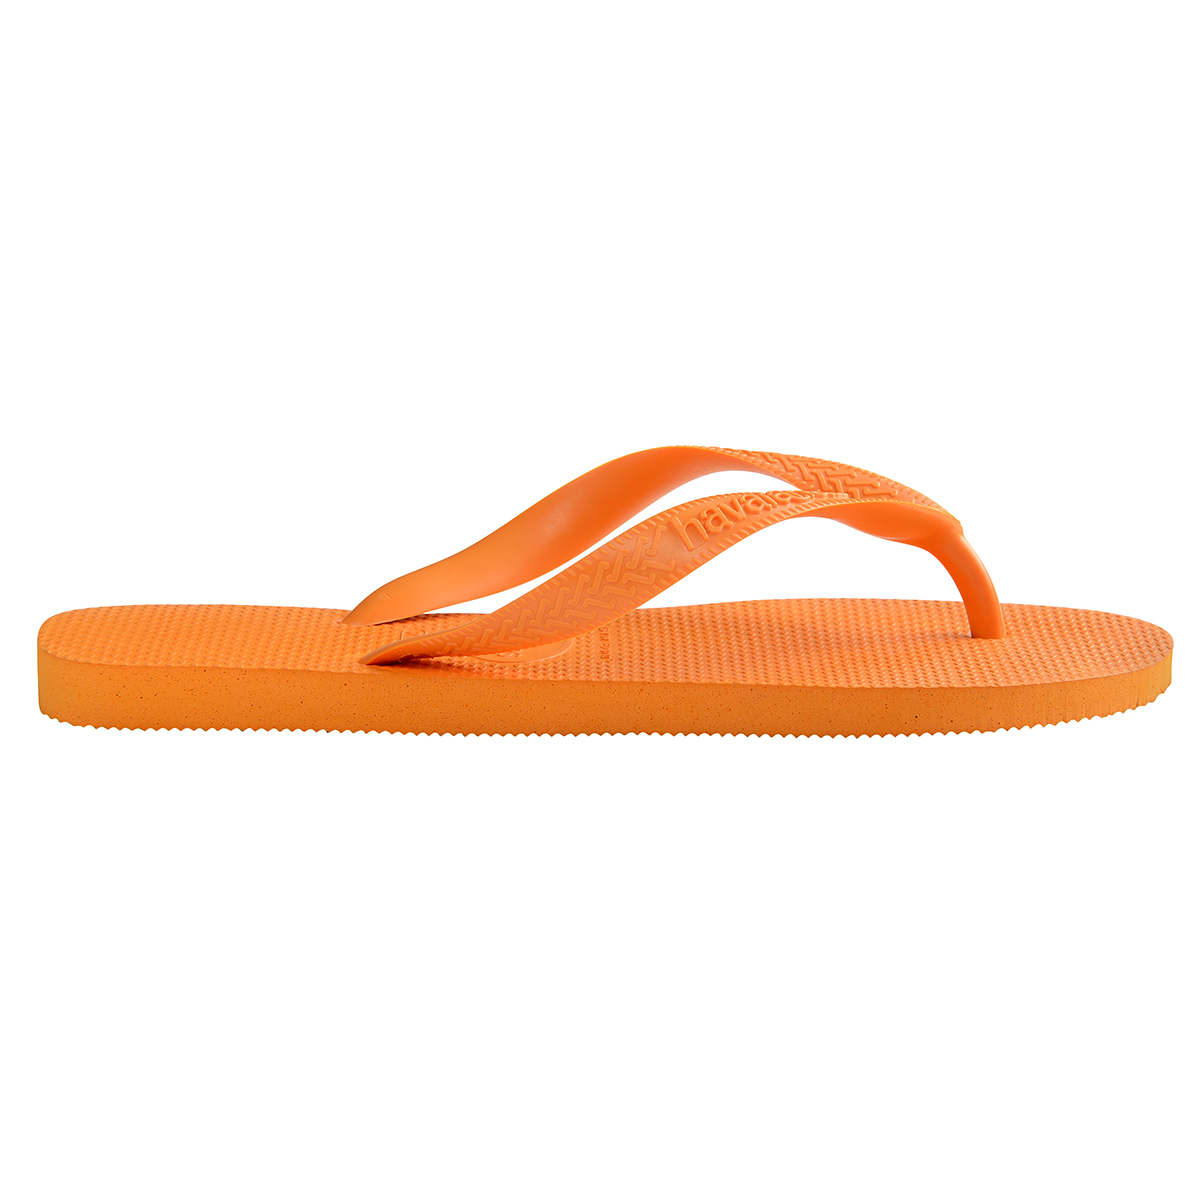 Havaianas Top Unisex Erwachsene Sandalen Zehentrenner Badelatschen 4000029 Orange